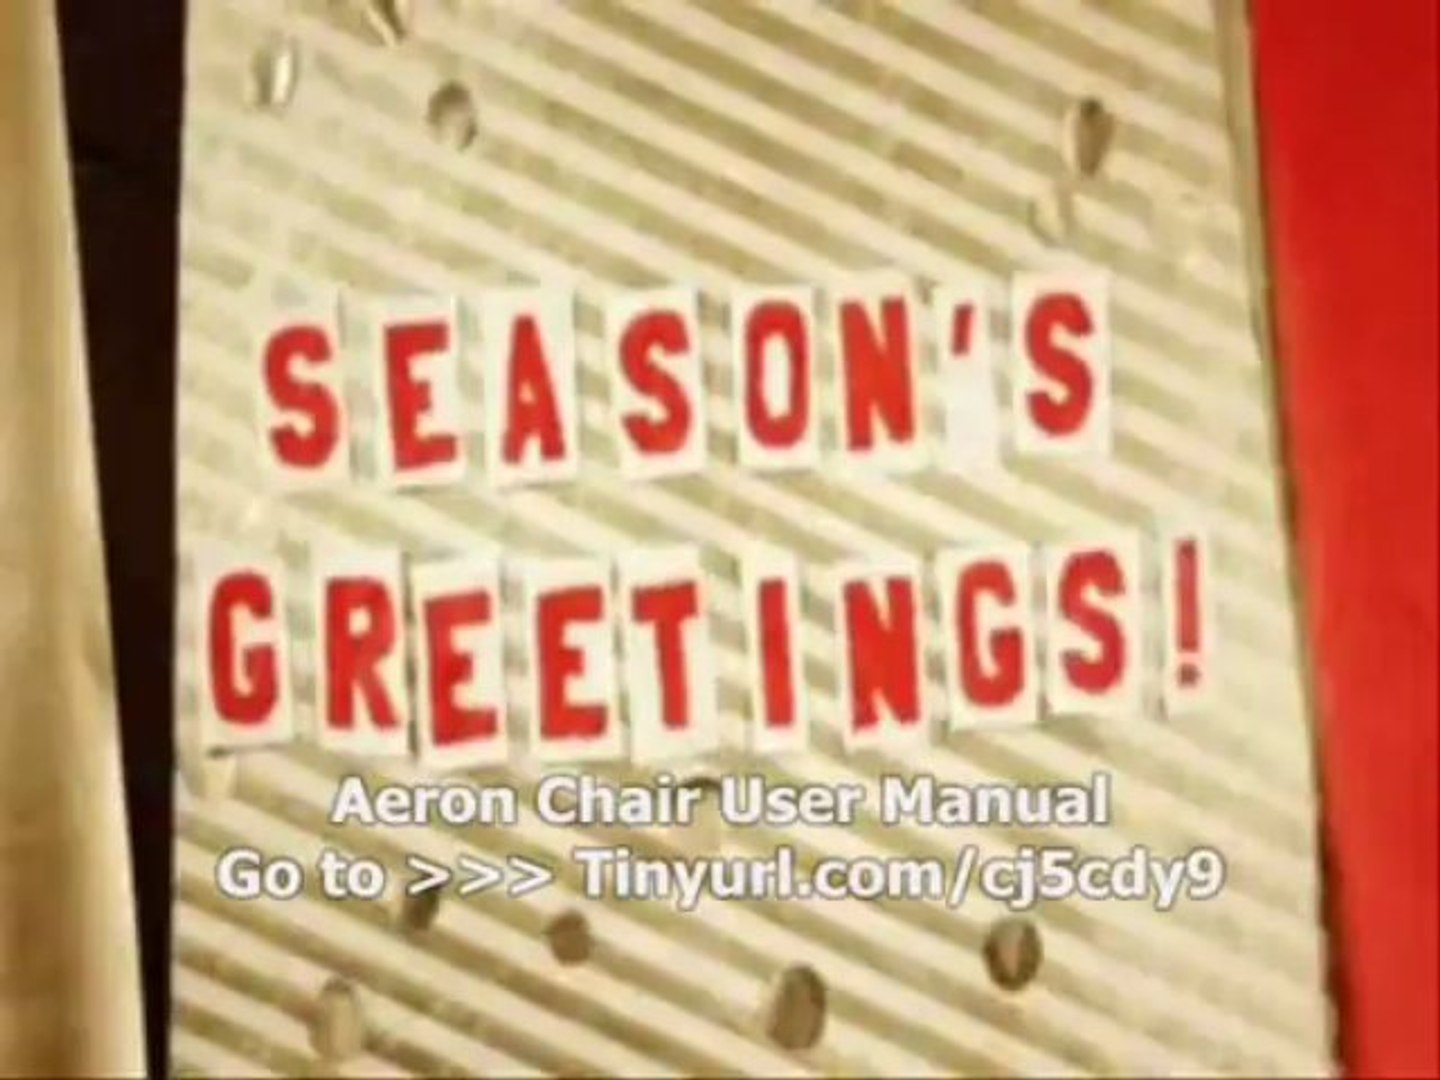 Aeron Chair User Manual Mark Down Code Aeron Chair User Manual